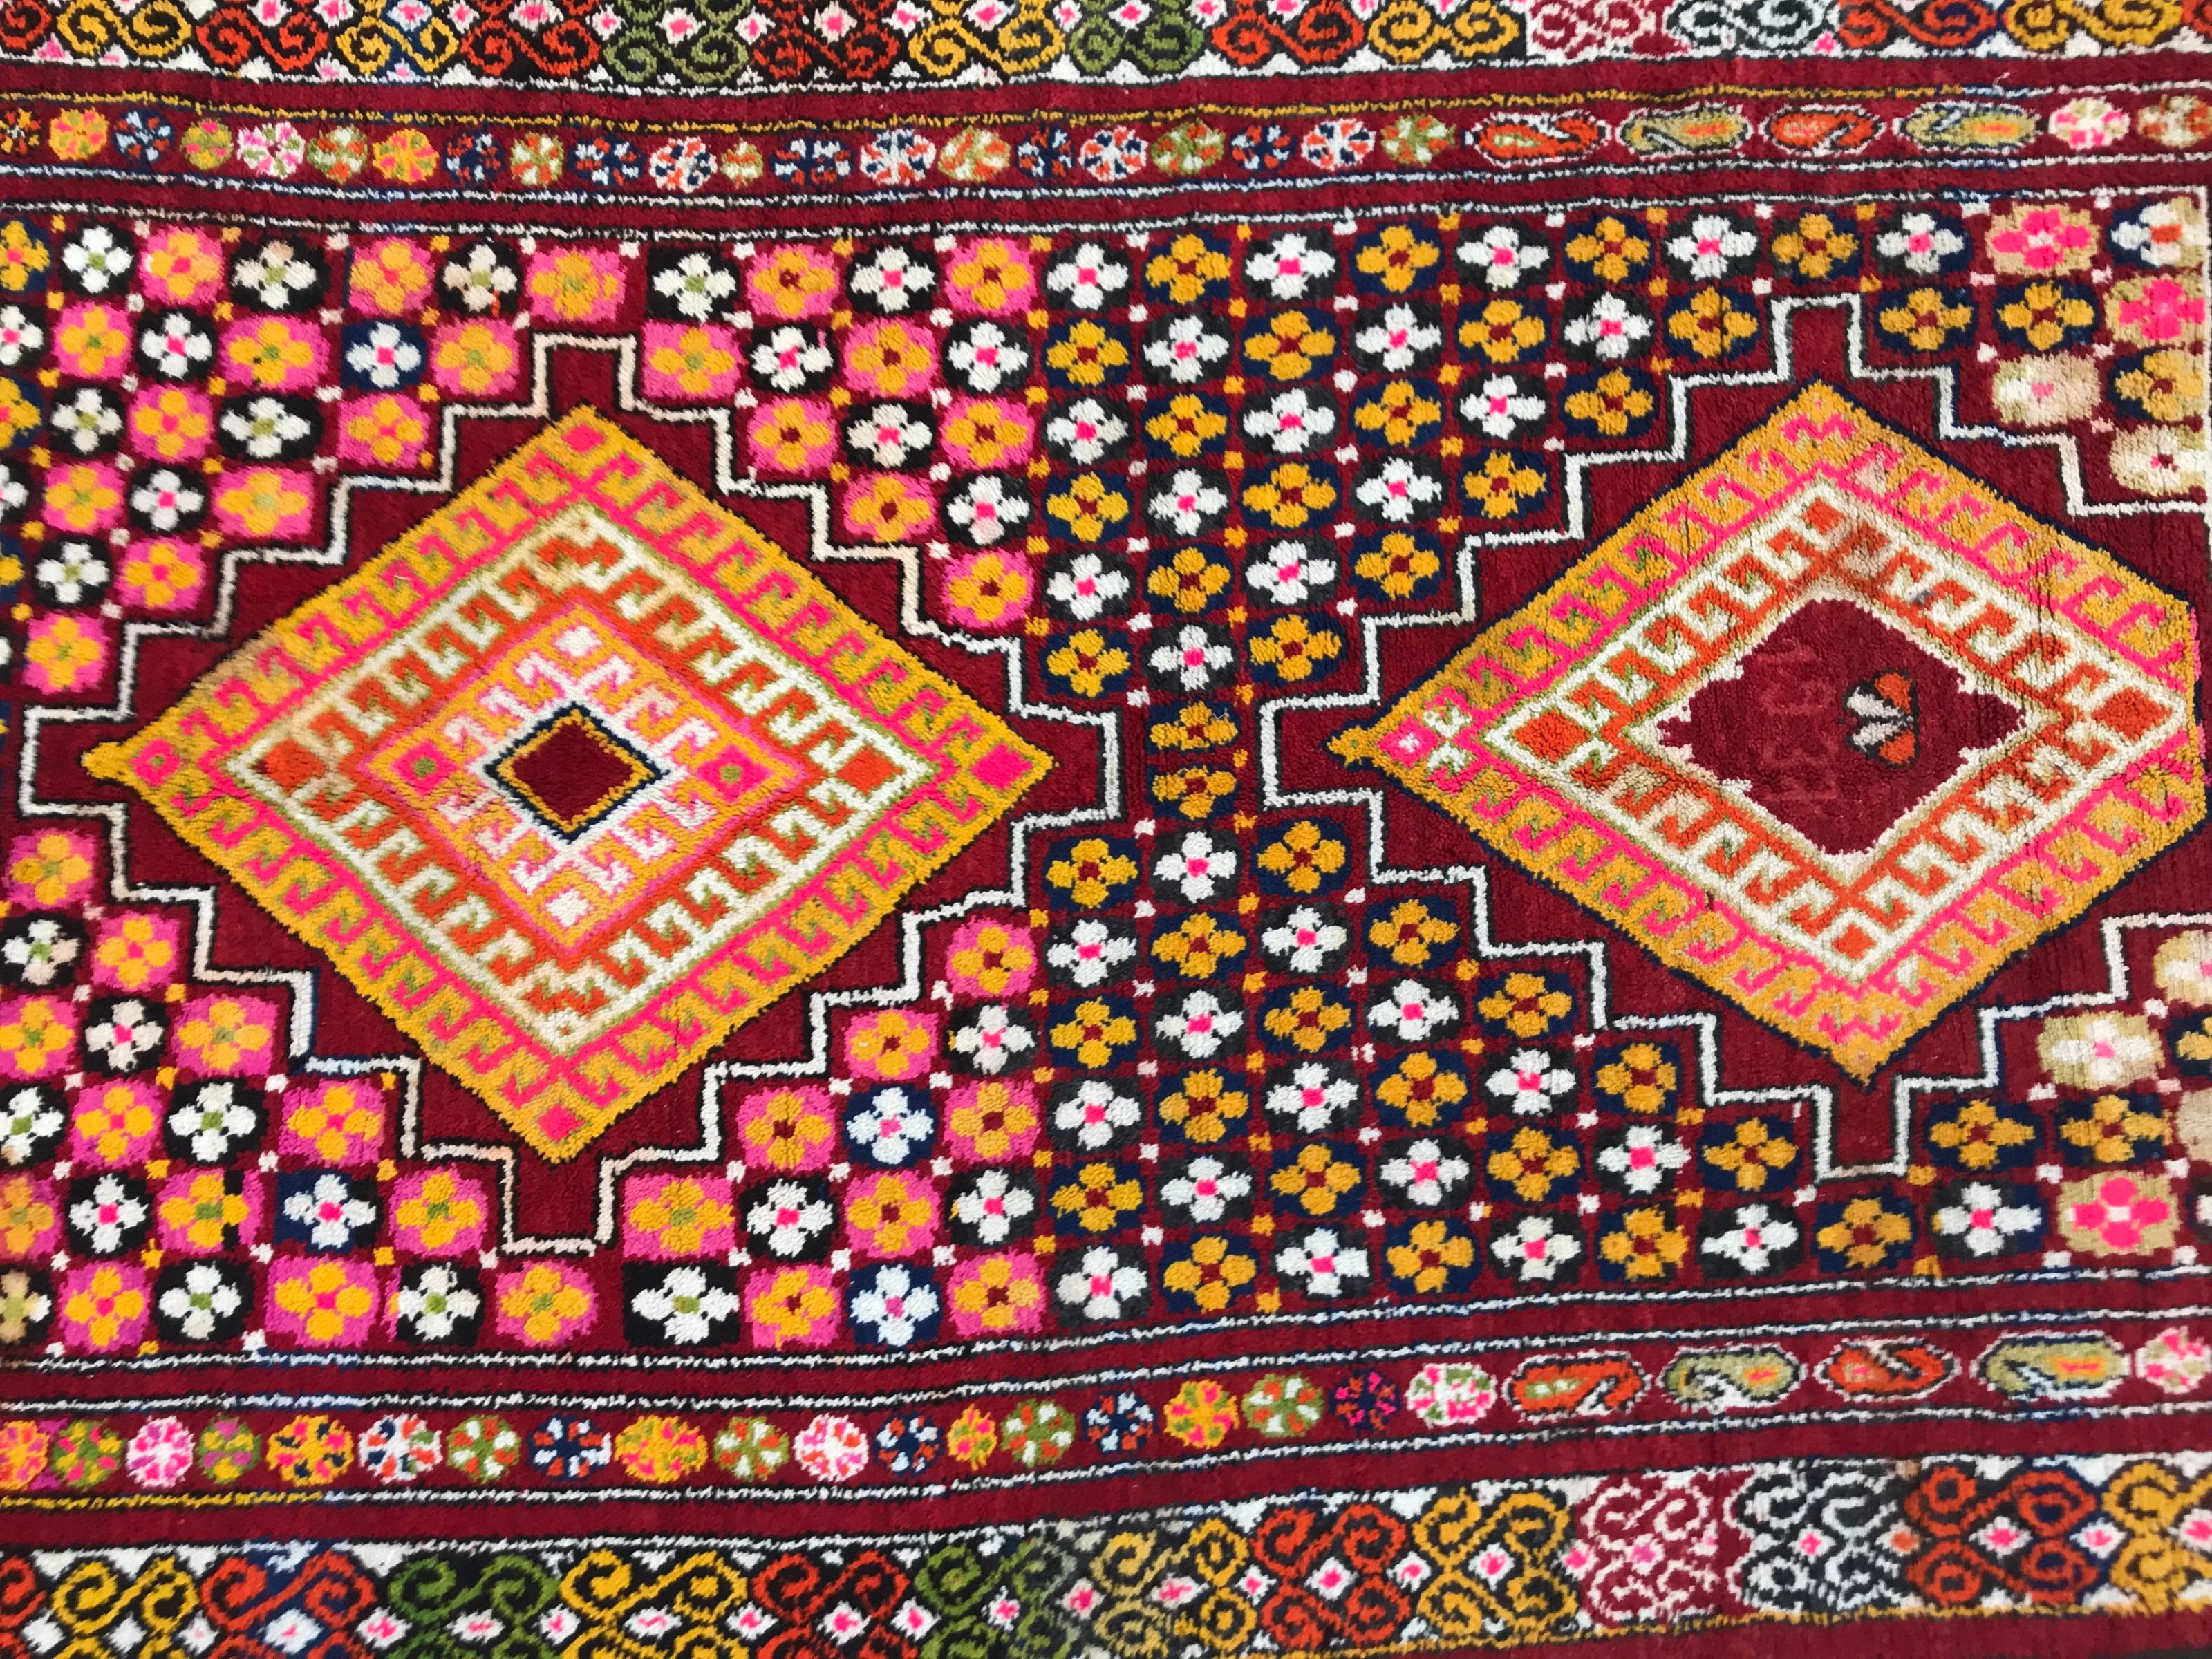 Wunderschöner marokkanischer Teppich mit schönem geometrischem Stammesmuster und schönen Farben mit Orange, Rosa, Gelb, Grün, Violett und Schwarz, datiert 1937, komplett handgeknüpft mit Wolle auf Wollfond.

✨✨✨
